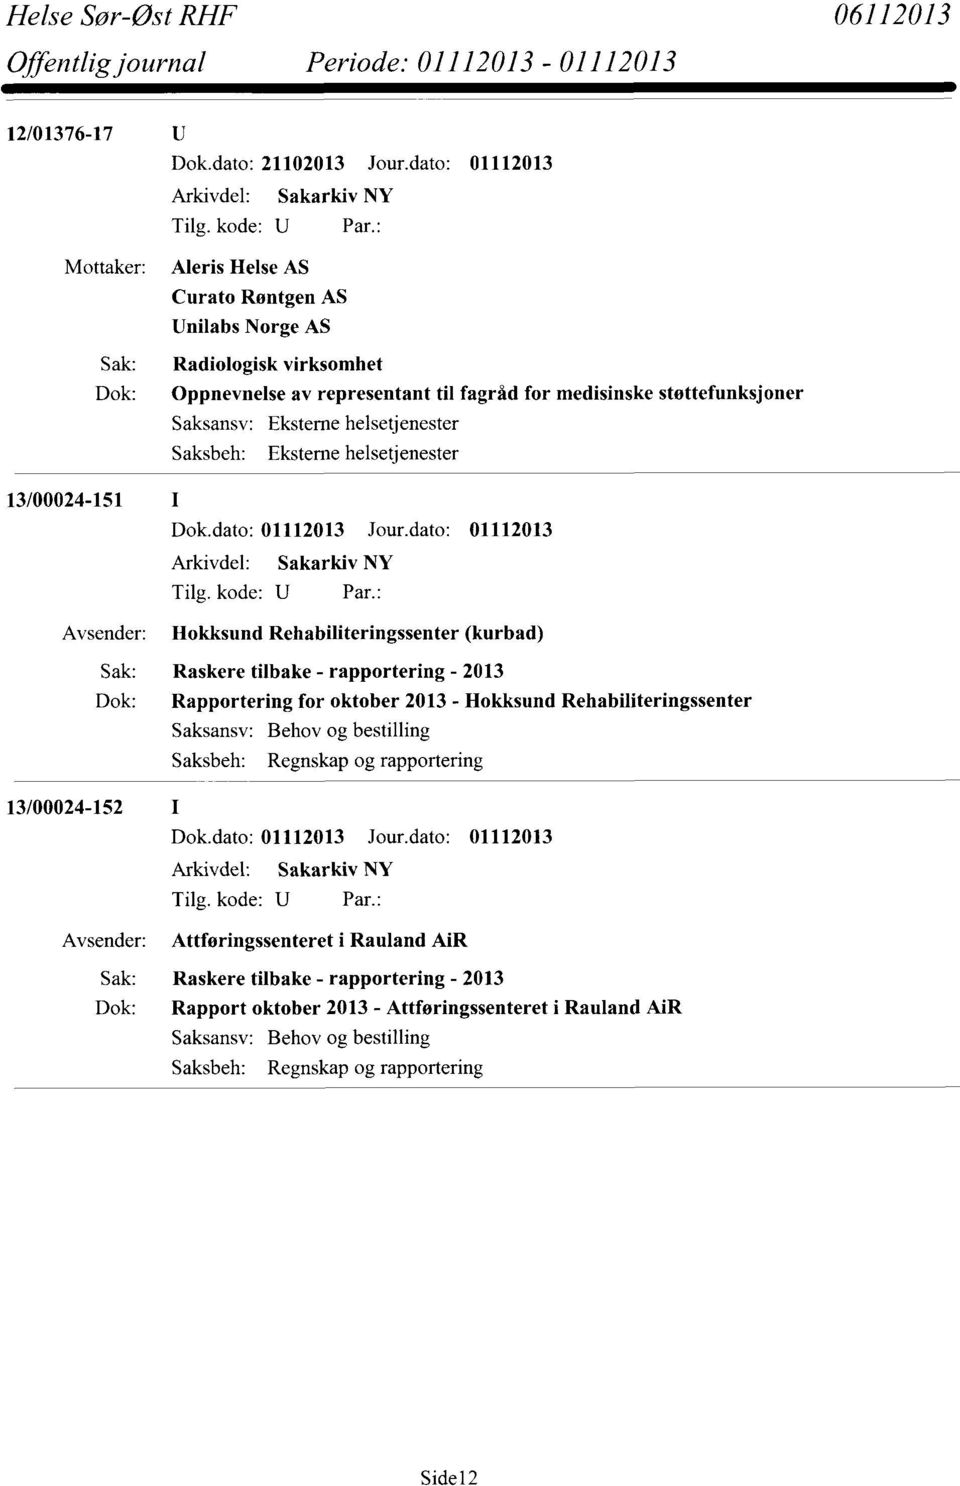 13/00024-151 I Hokksund Rehabiliteringssenter (kurbad) Sak: Raskere tilbake - rapportering - 2013 Dok: Rapportering for oktober 2013 - Hokksund Rehabiliteringssenter